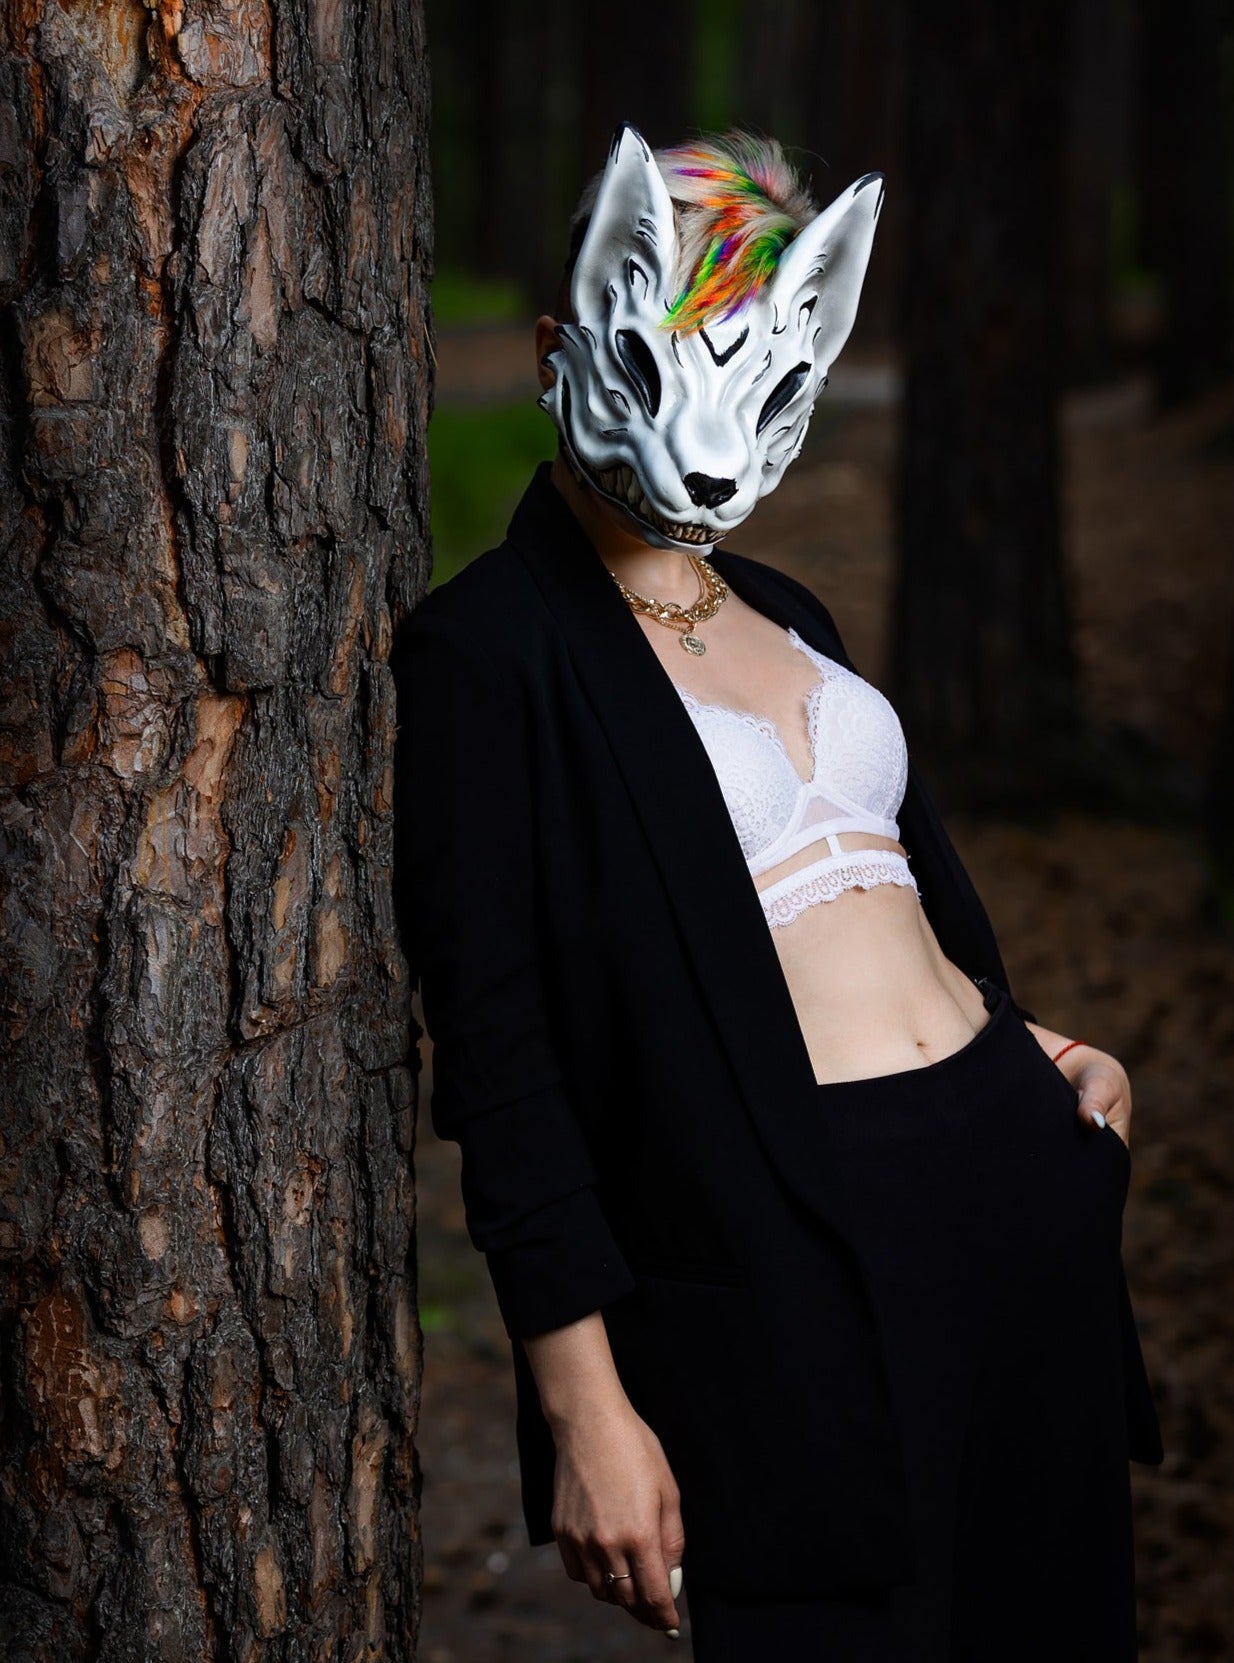 Kitsune mask, fox mask, Black and White Kitsune mask, MADE TO ORDER, Kitsune Cosplay, Fox mask, mask – workshoprs